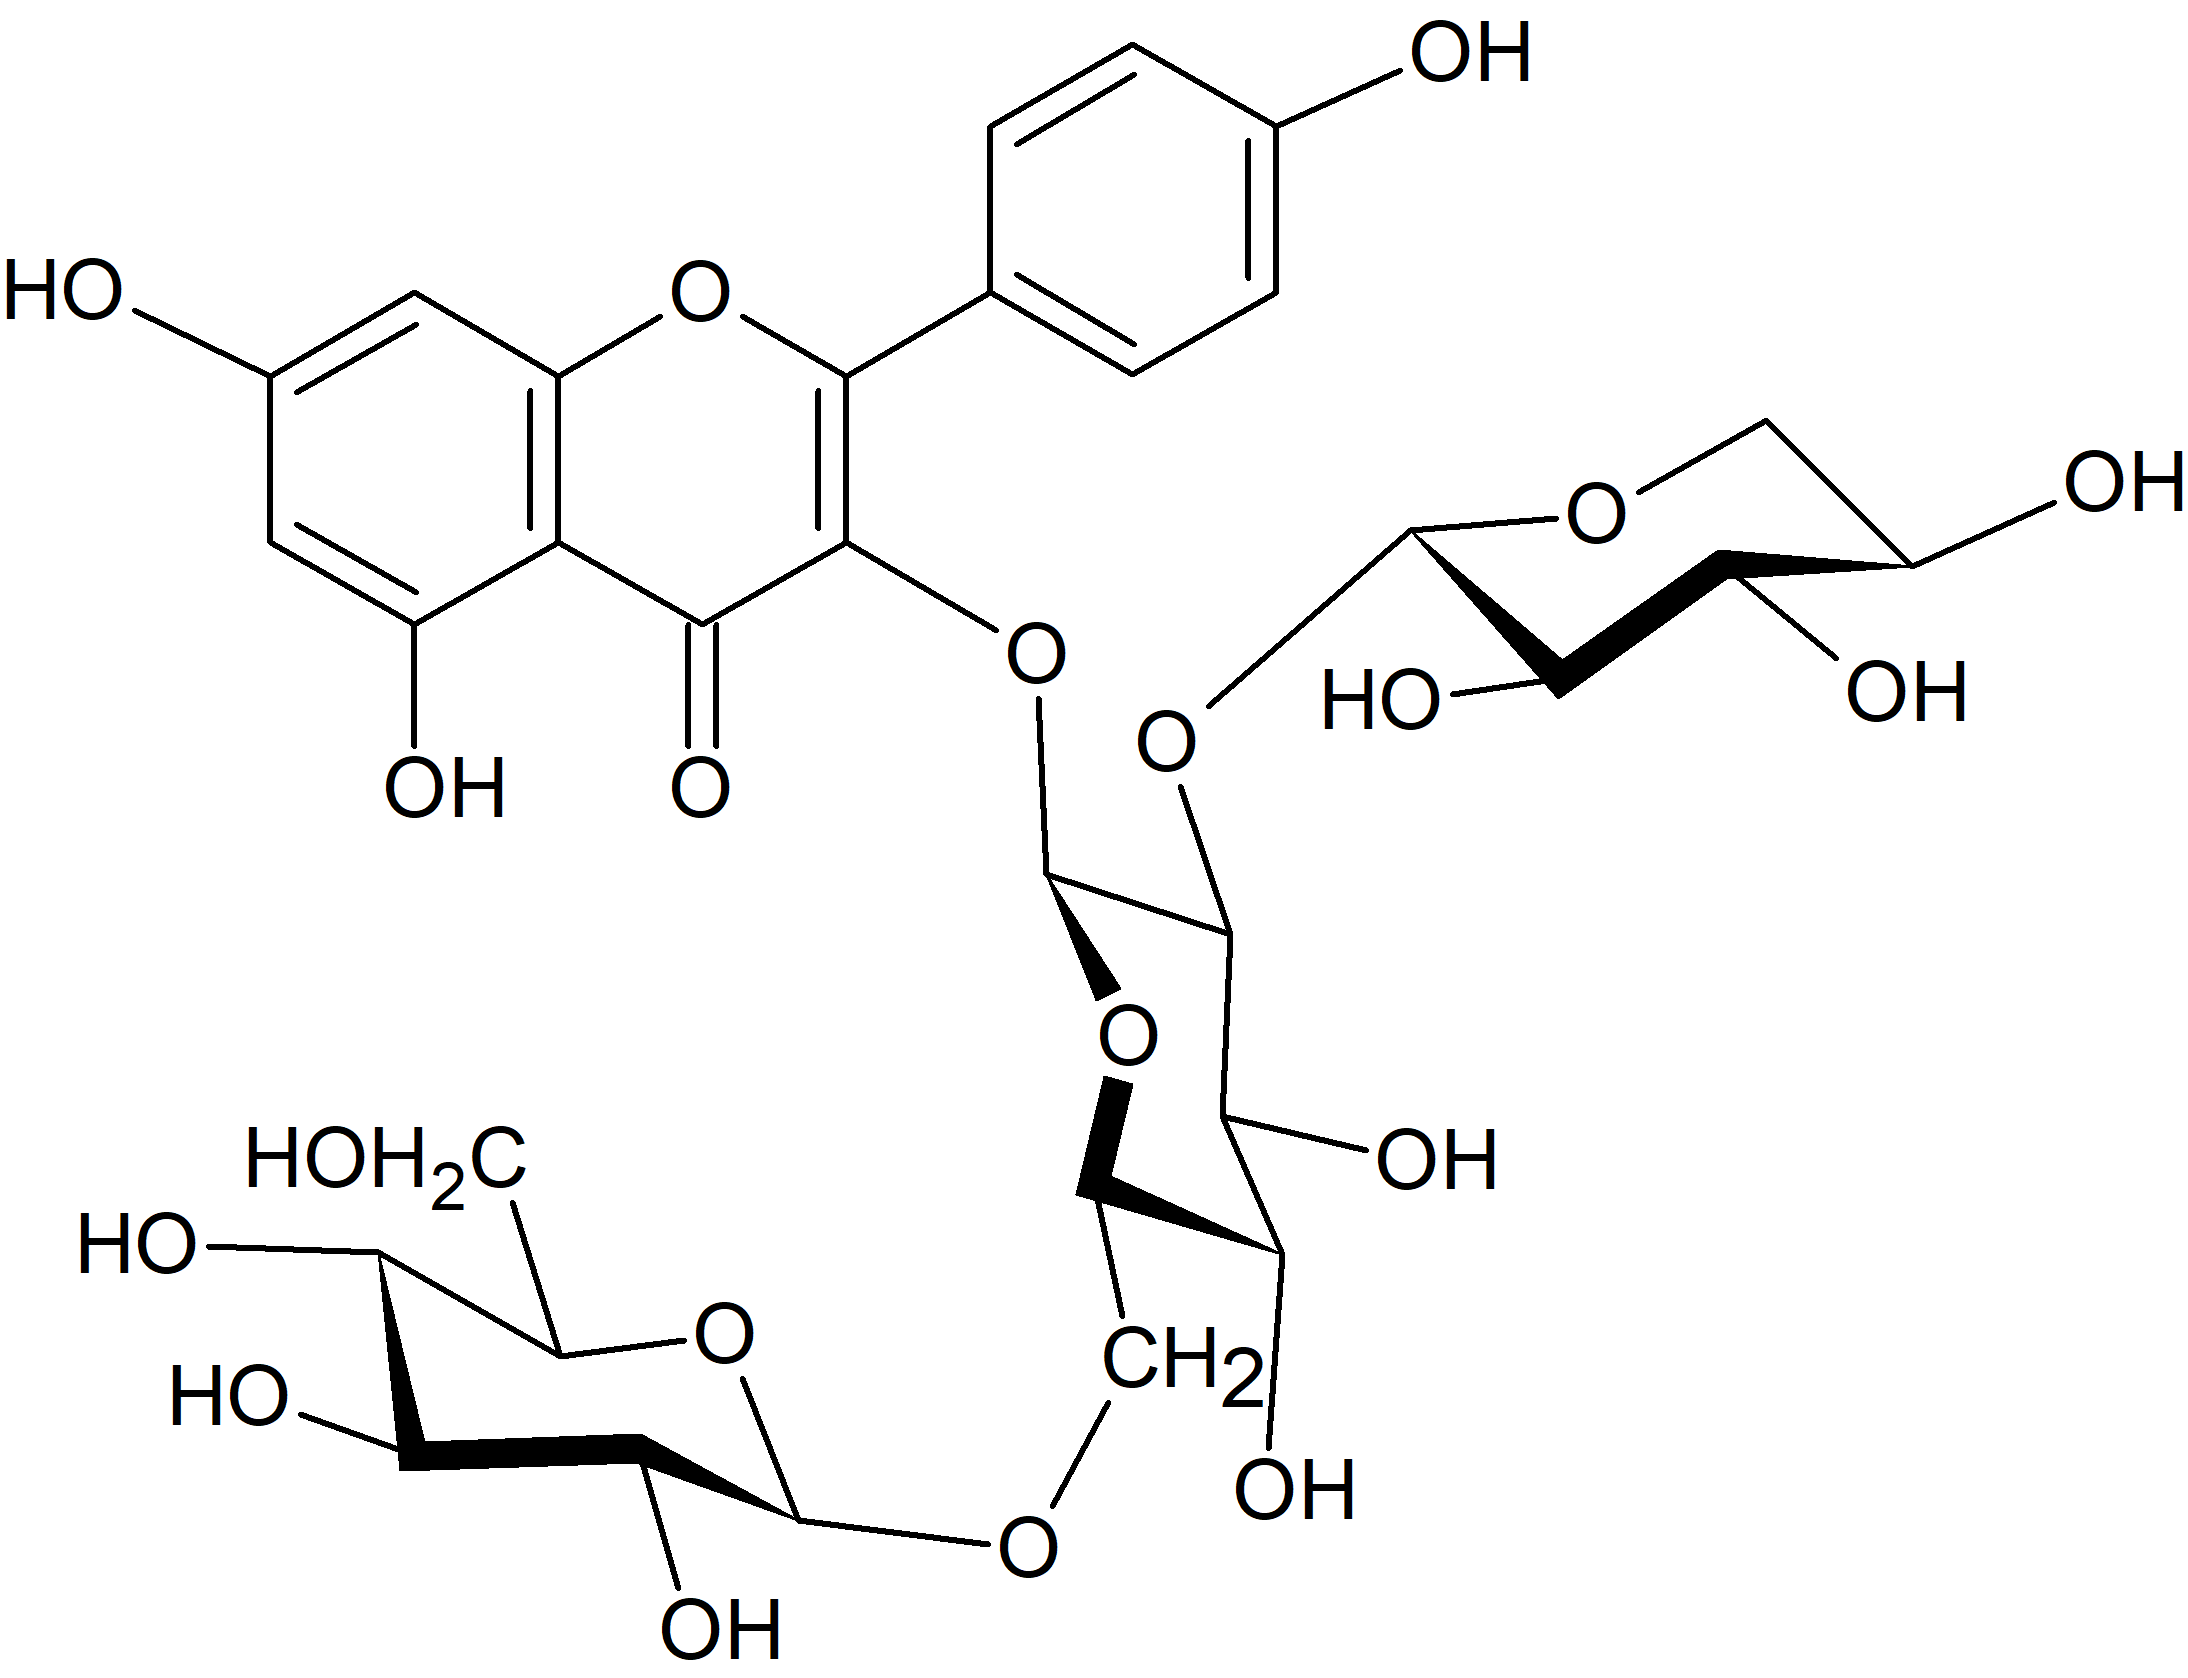 Kaempferol 3-O-xylosyl-(1→2)-glucosyl-(1→6)-glucoside